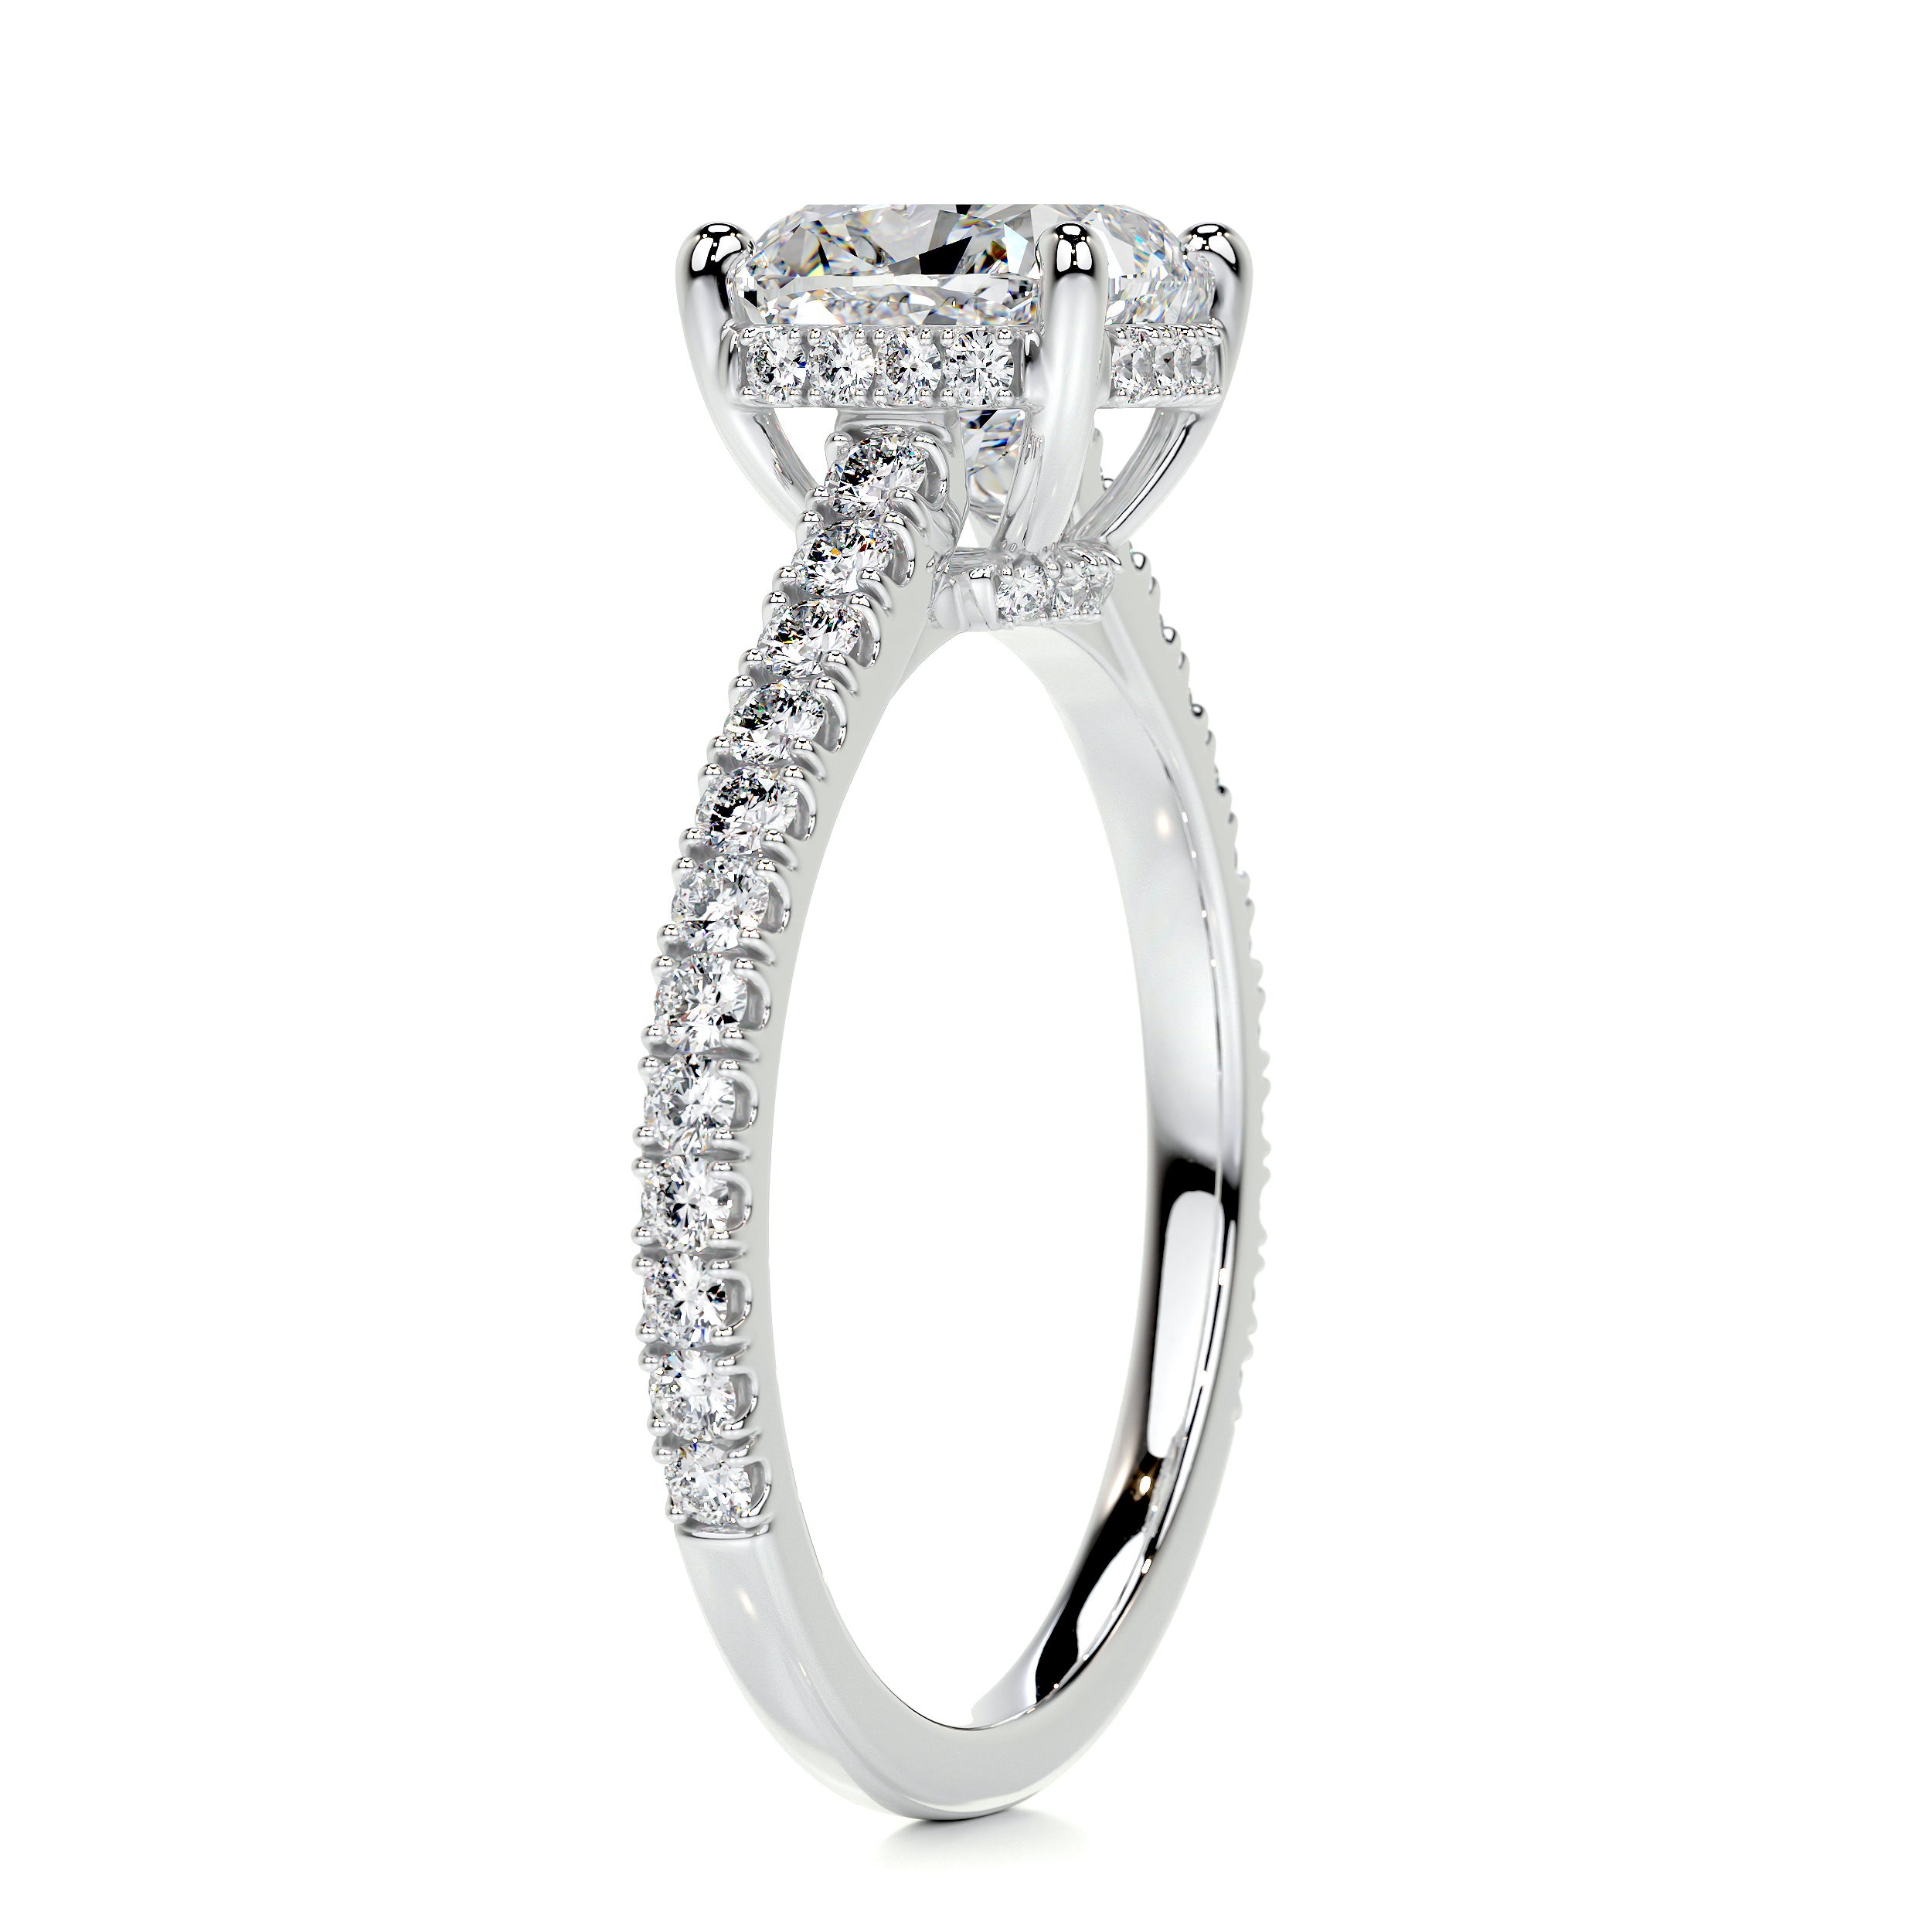 Cassandra Diamond Engagement Ring -14K White Gold